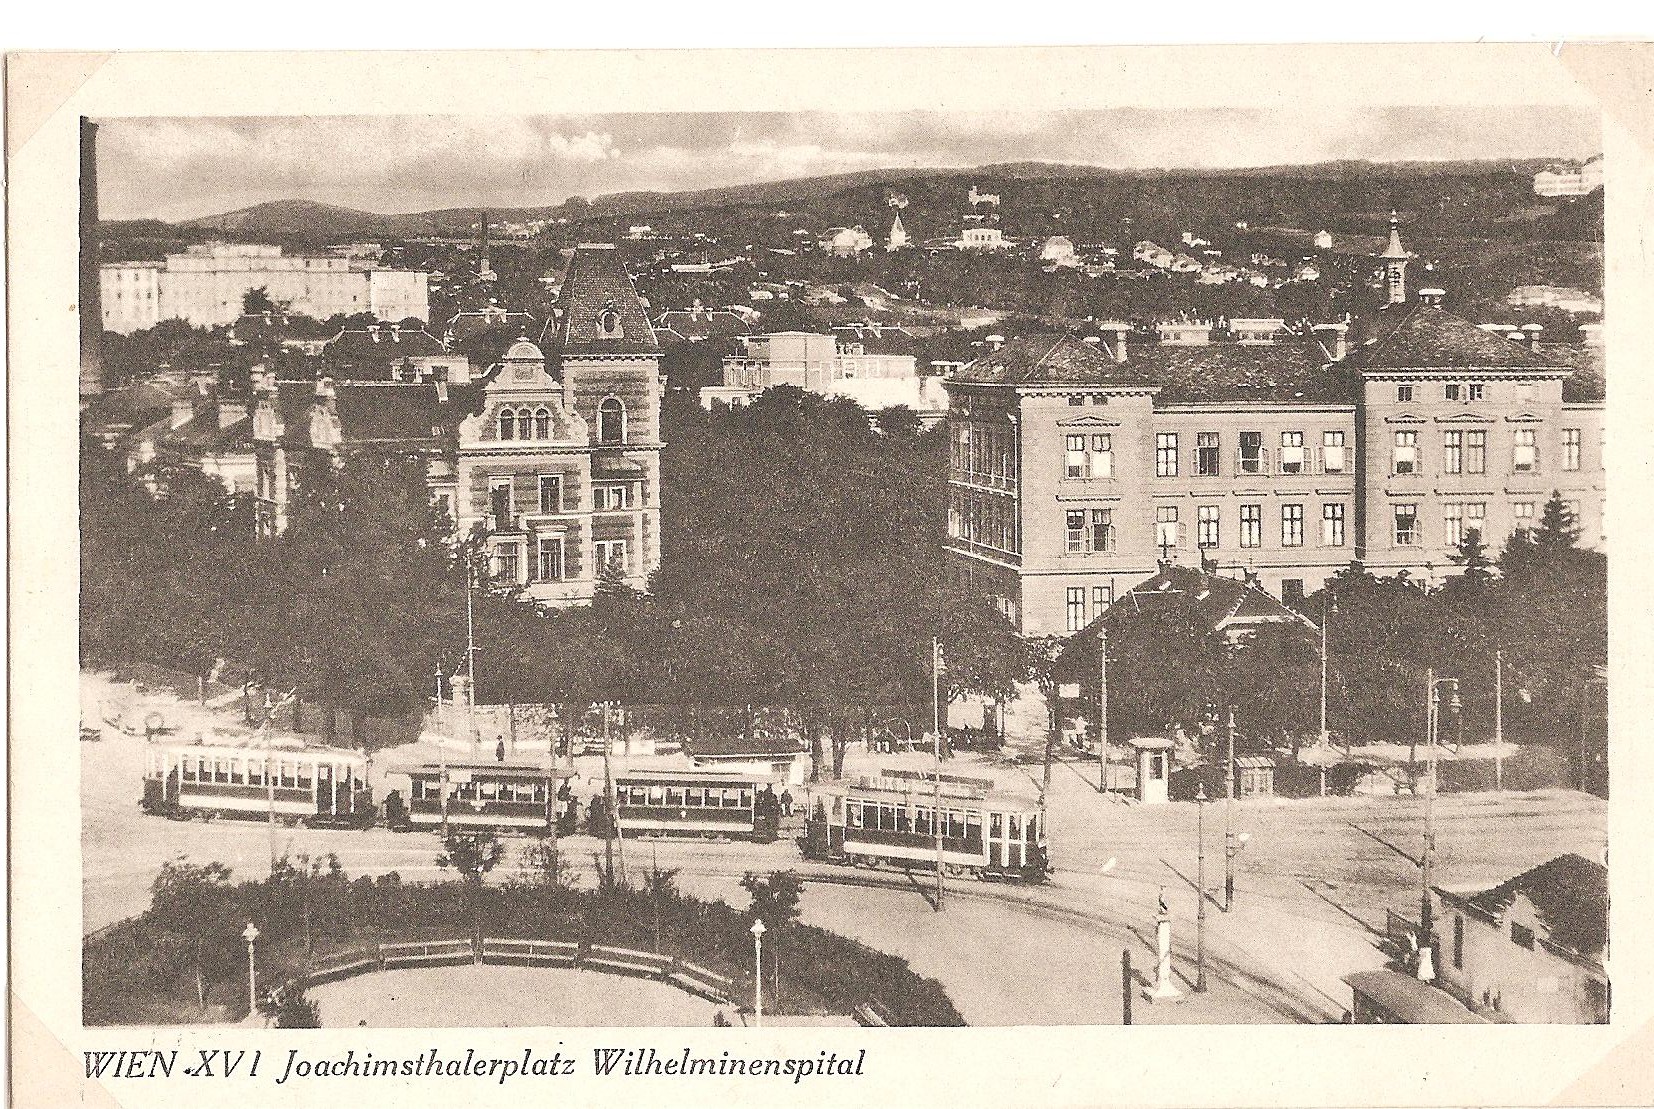 Joachimsthalerpl., Wilhelminenspital, IN 1927-28